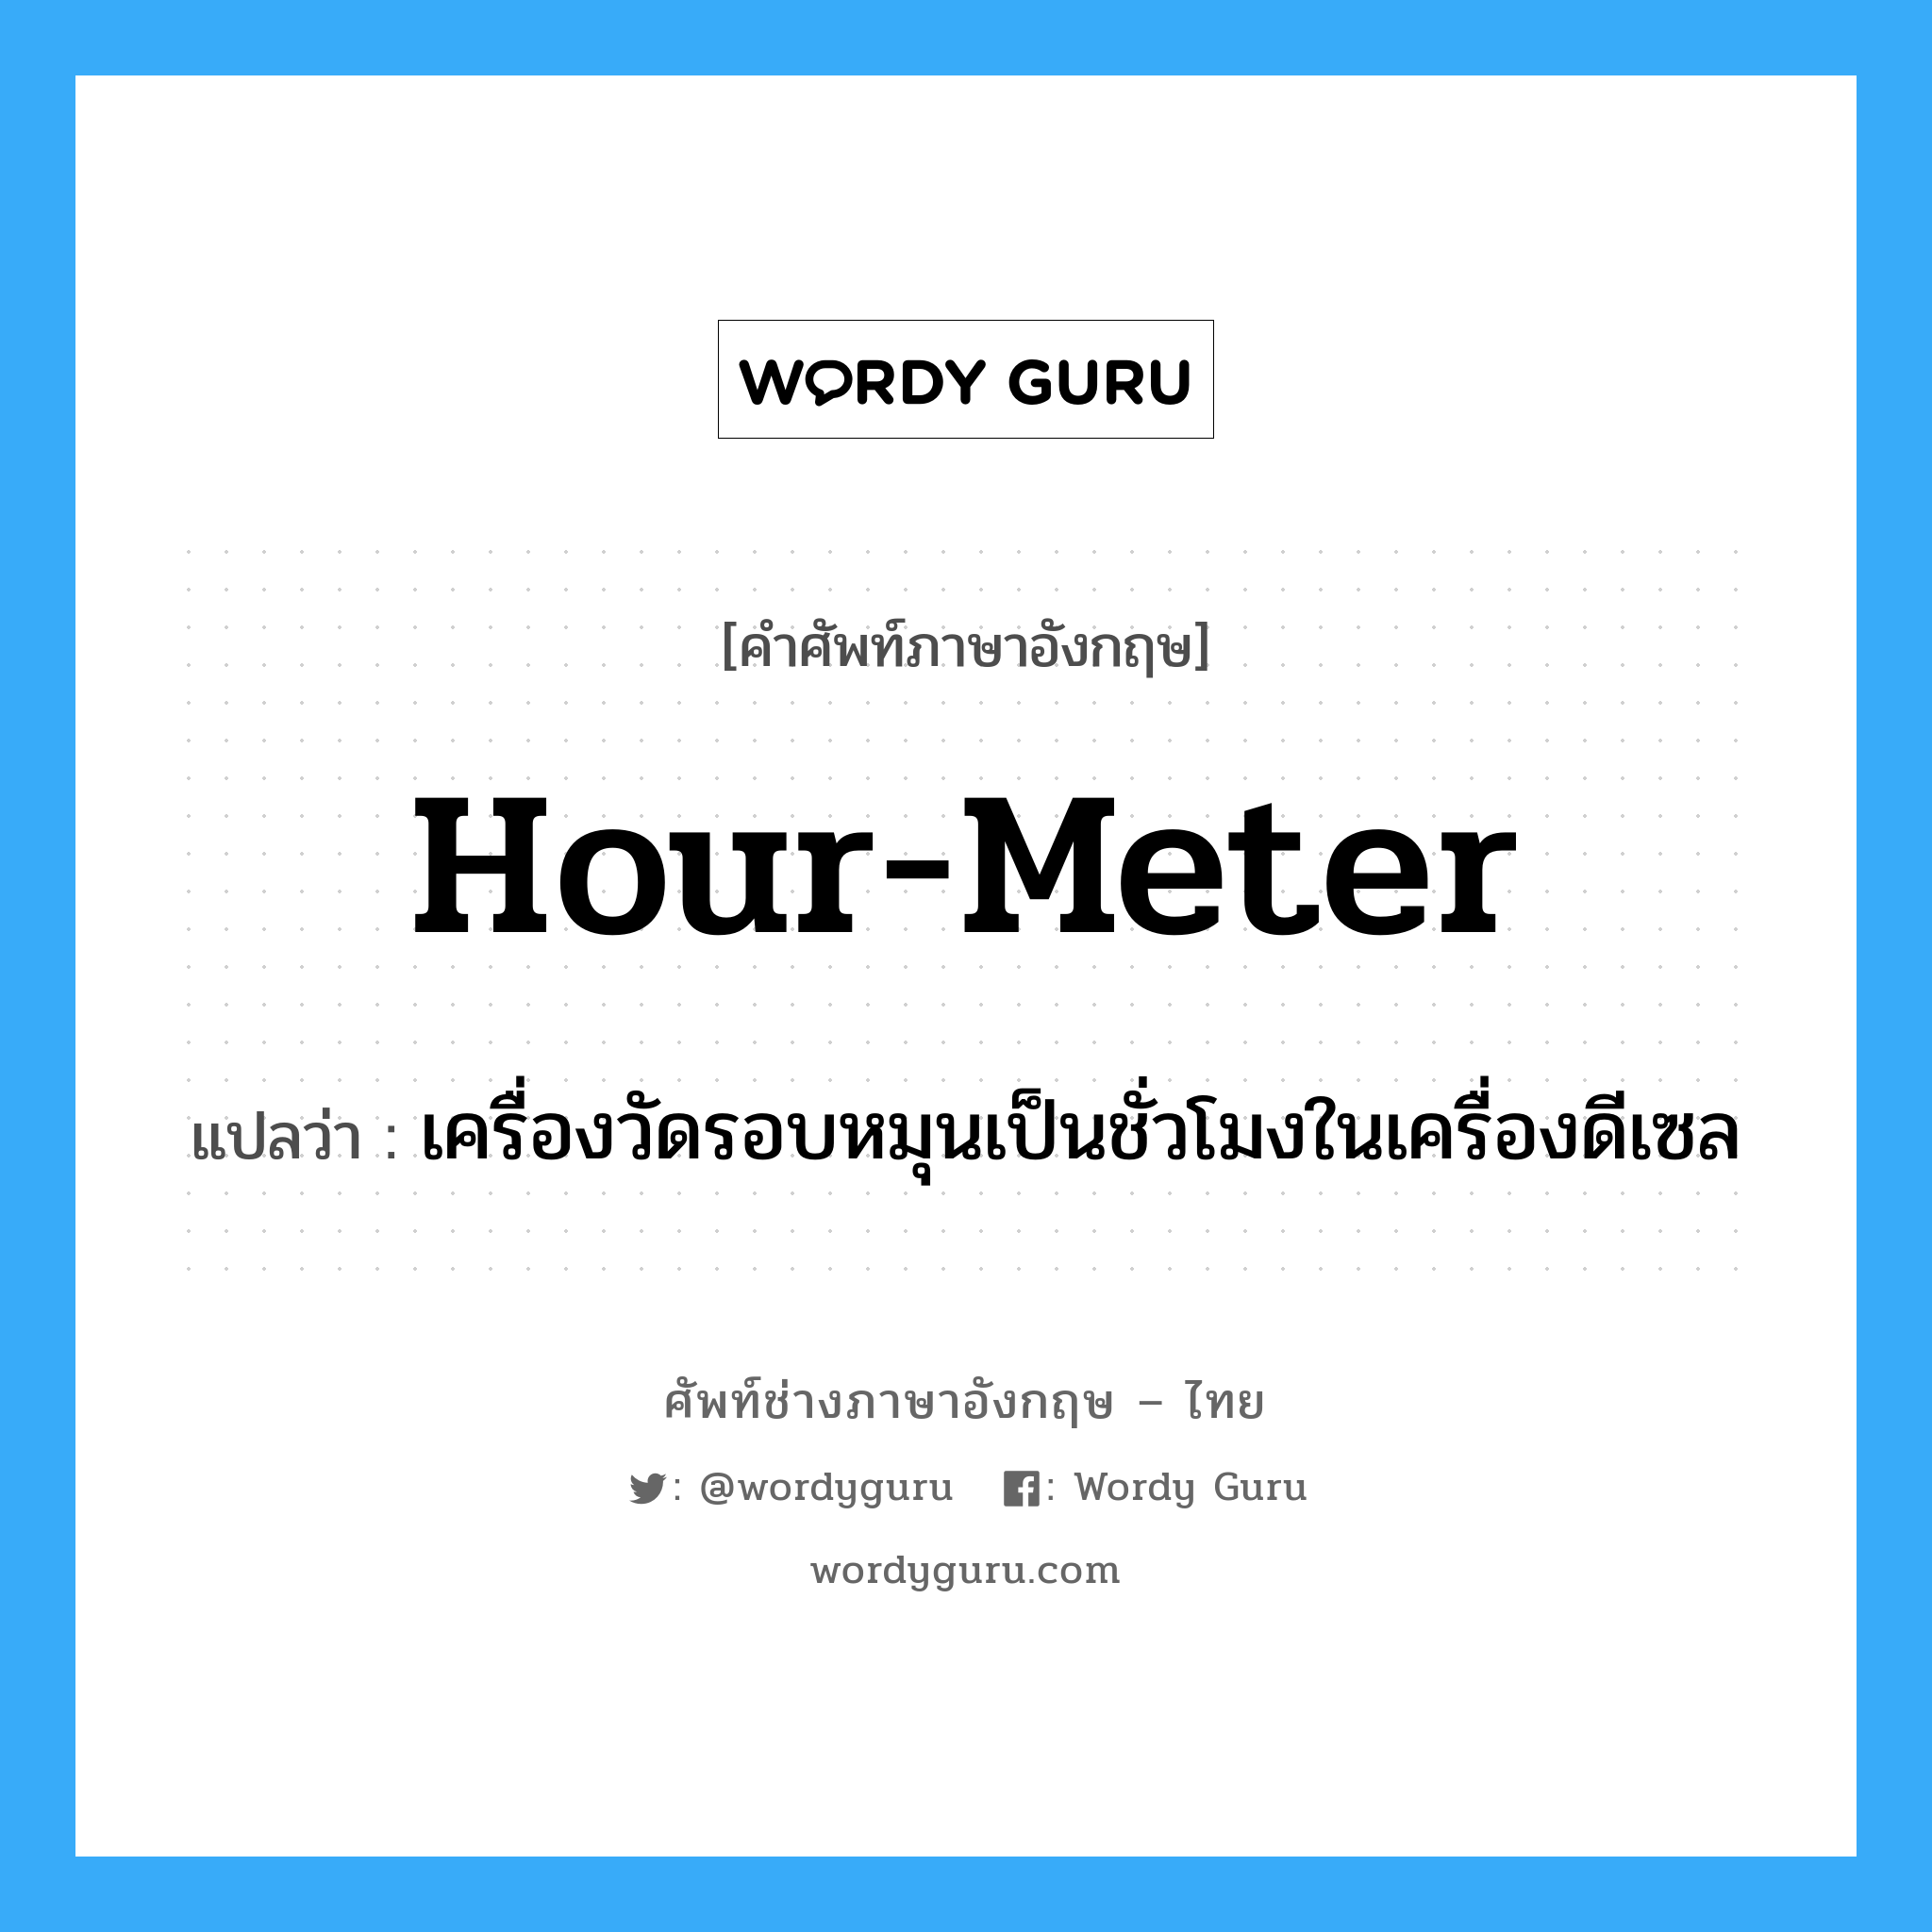 hour-meter แปลว่า?, คำศัพท์ช่างภาษาอังกฤษ - ไทย hour-meter คำศัพท์ภาษาอังกฤษ hour-meter แปลว่า เครื่องวัดรอบหมุนเป็นชั่วโมงในเครื่องดีเซล